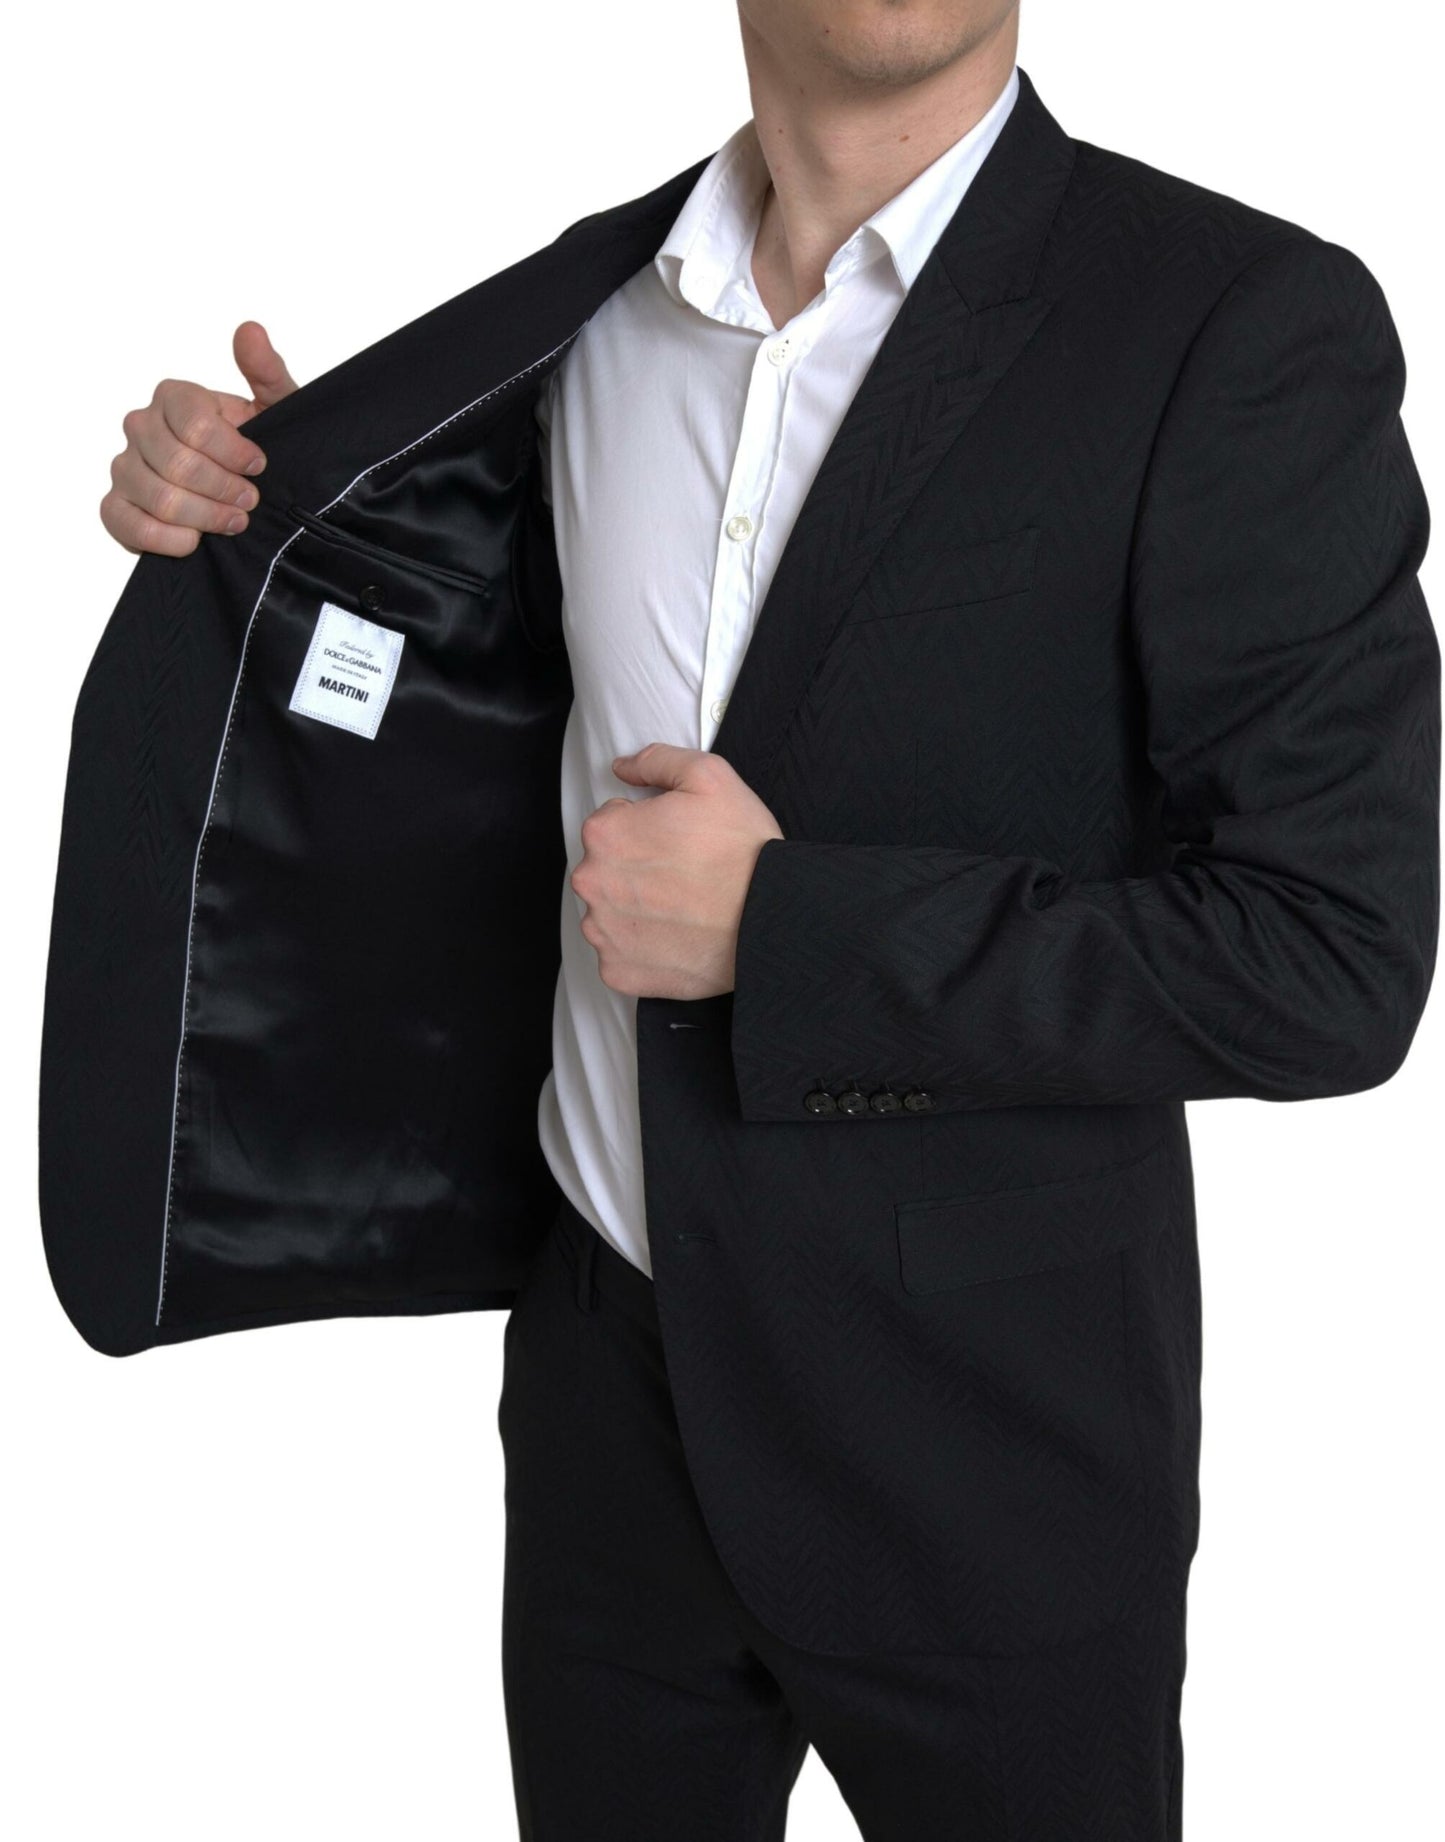 Exclusive Martini Black Slim Fit Suit